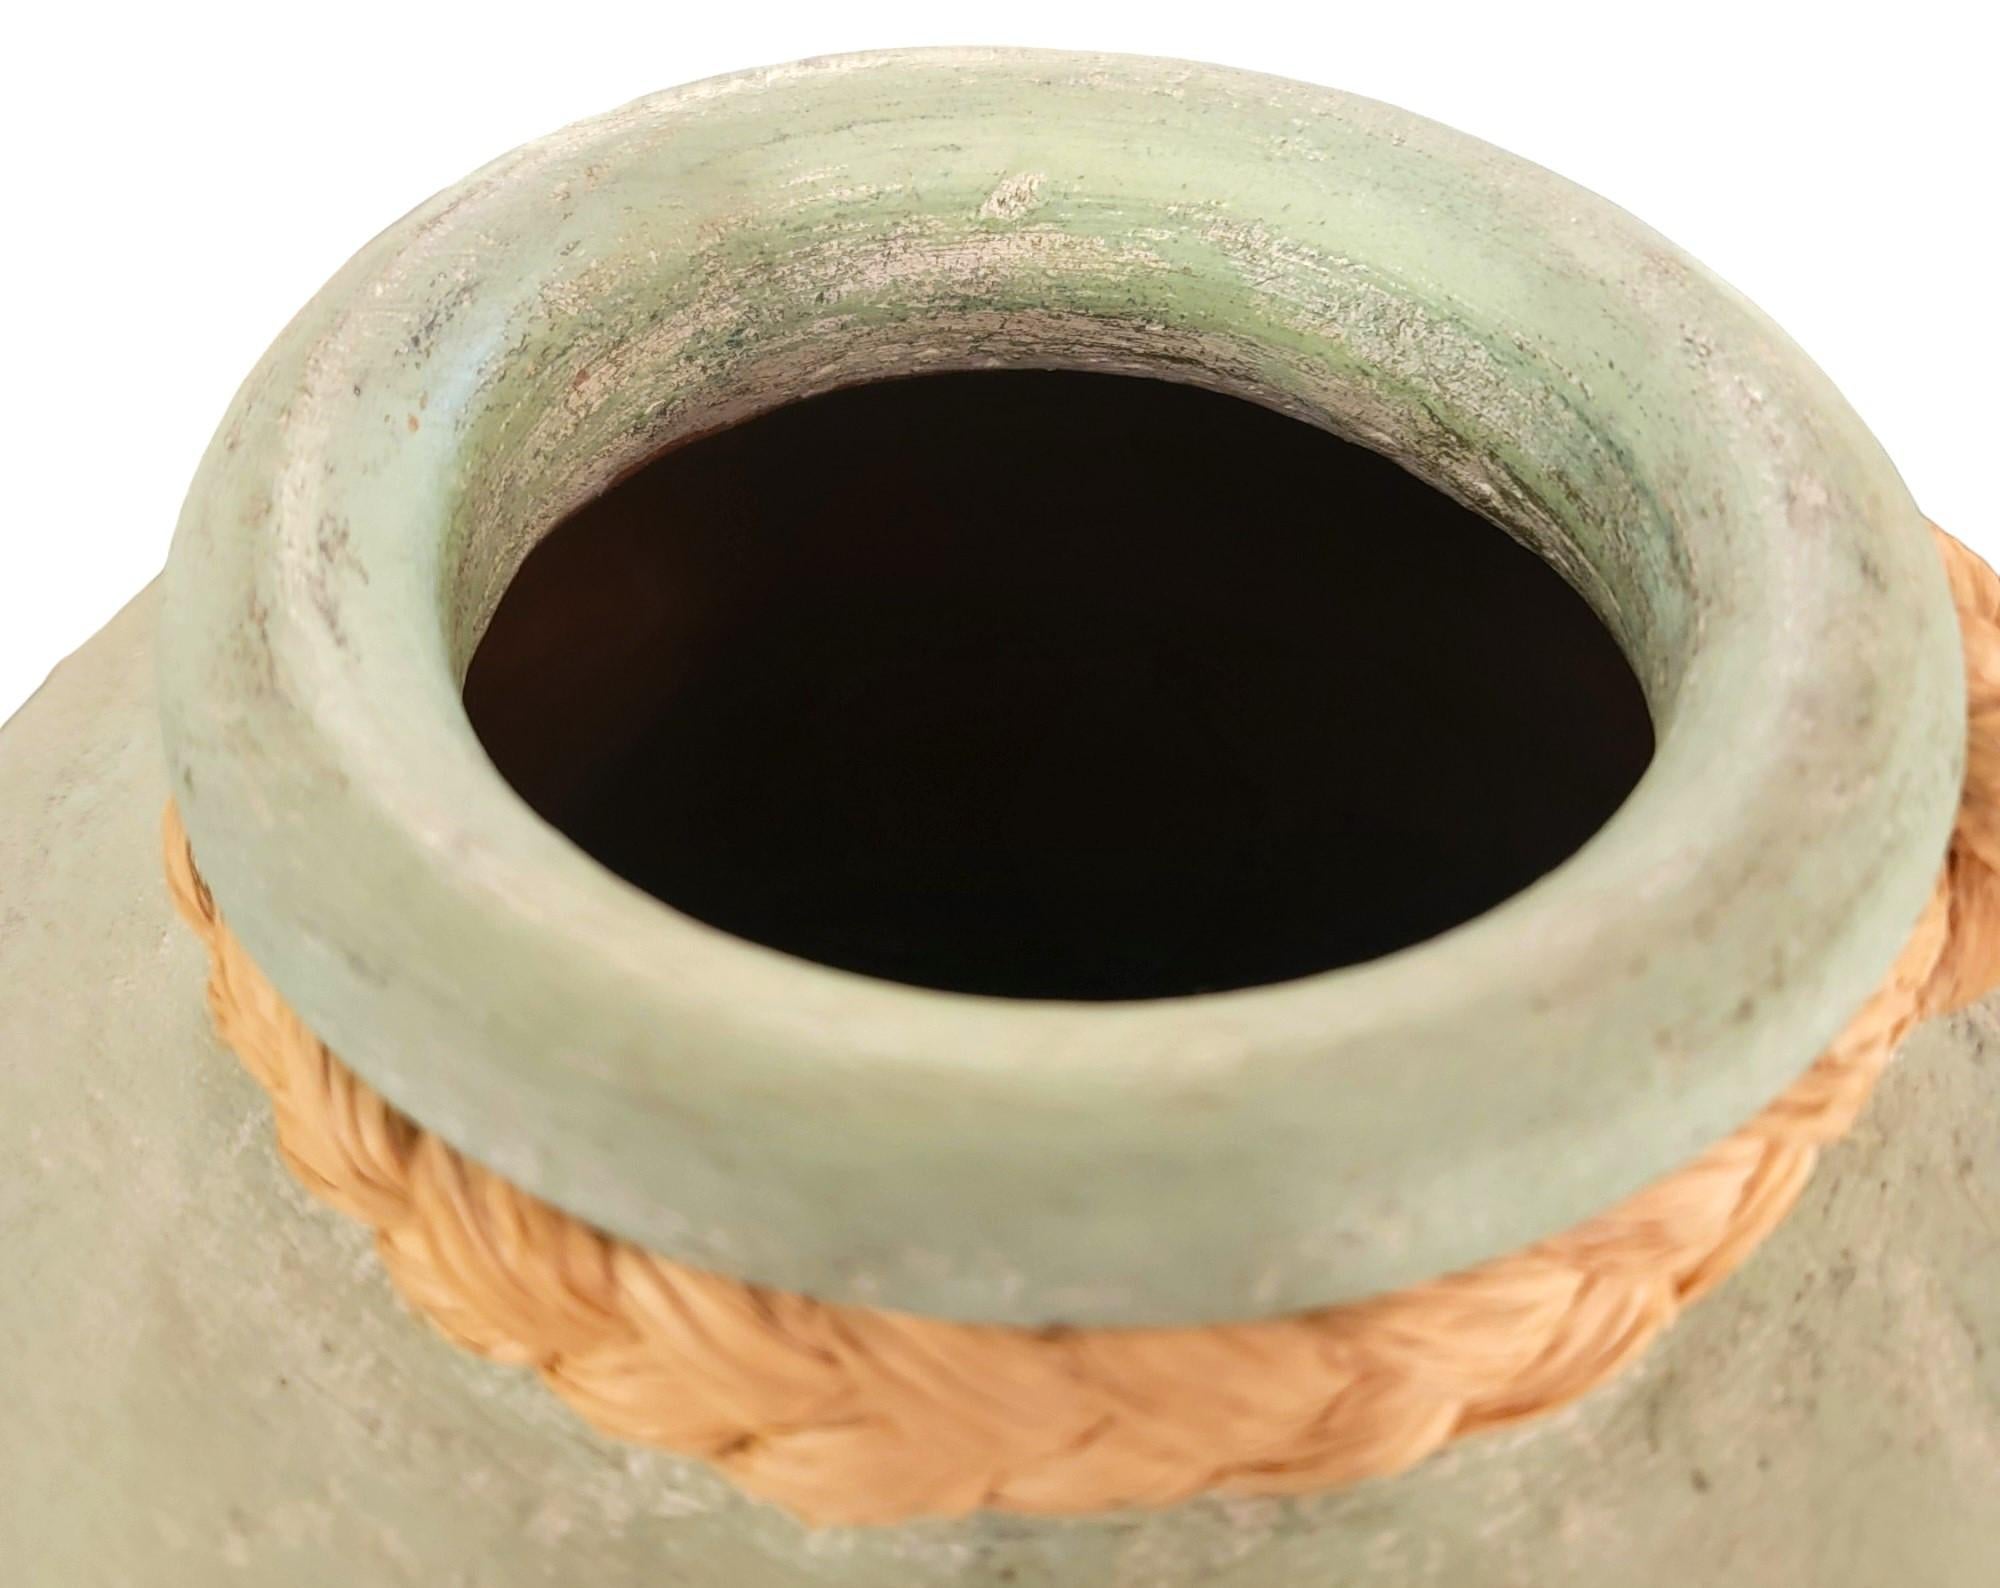 Pulverbeschichtete Vase mit Seilsprosse. Maße: ca. 13 Durchmesser x 21 hoch